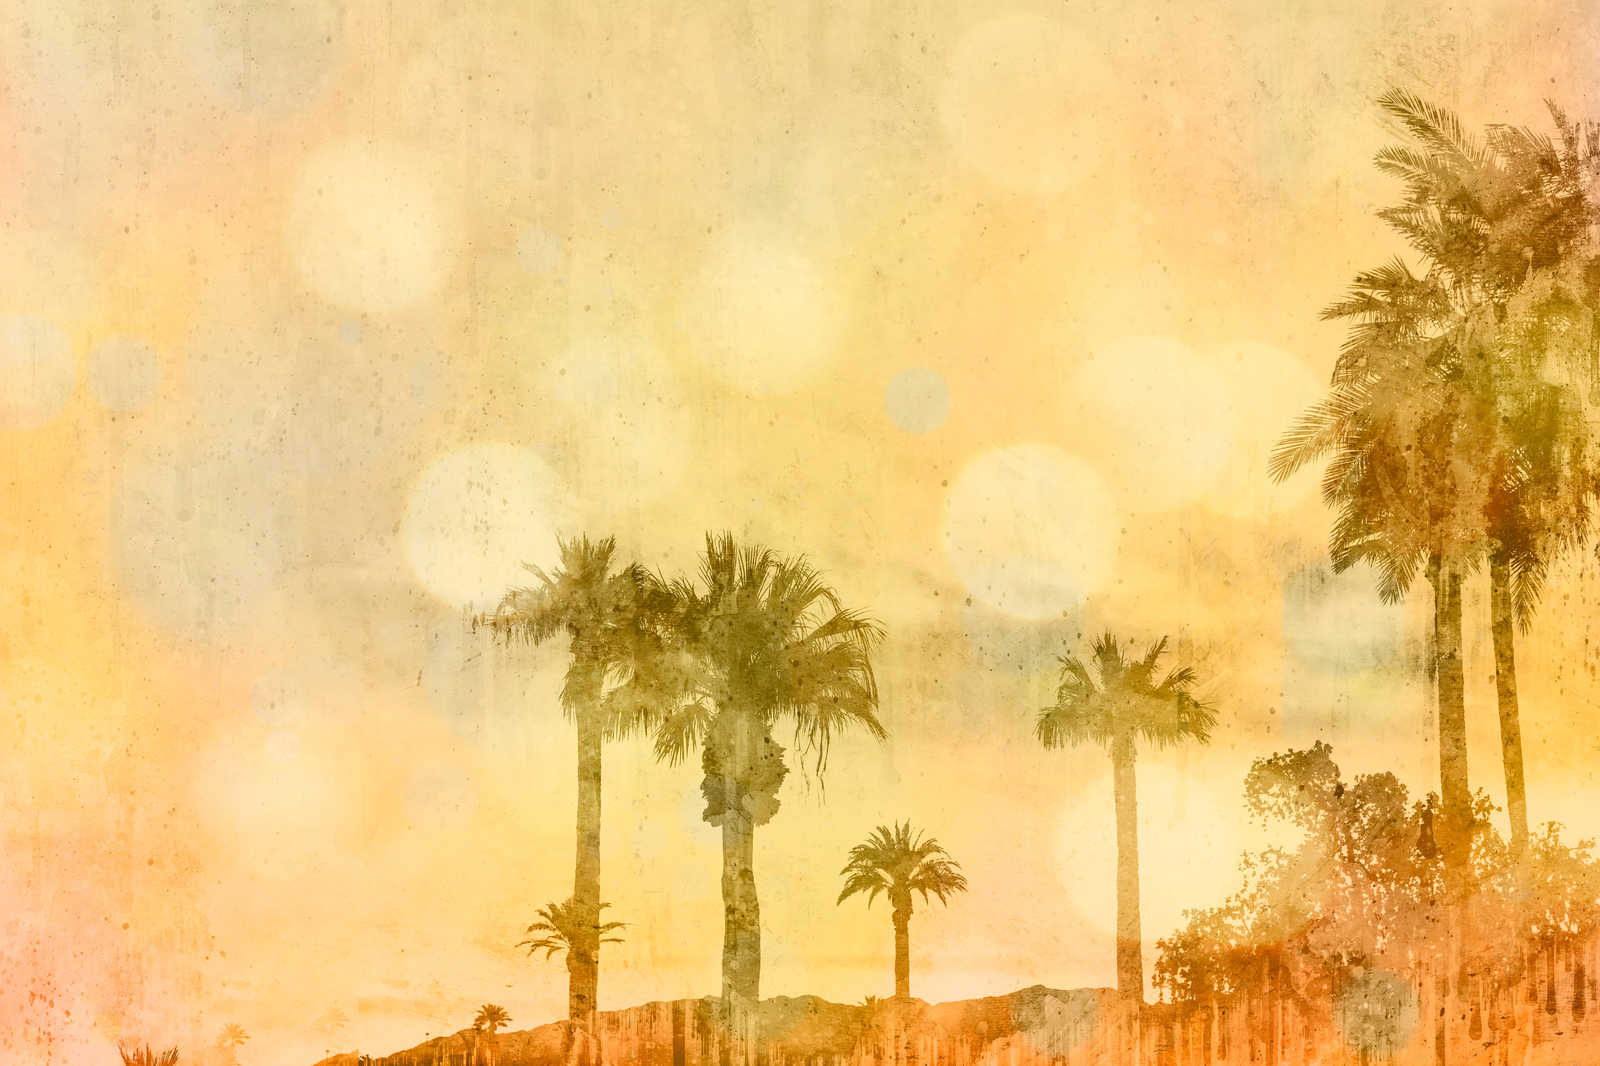             Tableau sur toile Plage de palmiers au coucher du soleil avec effet de lumière - 1,20 m x 0,80 m
        